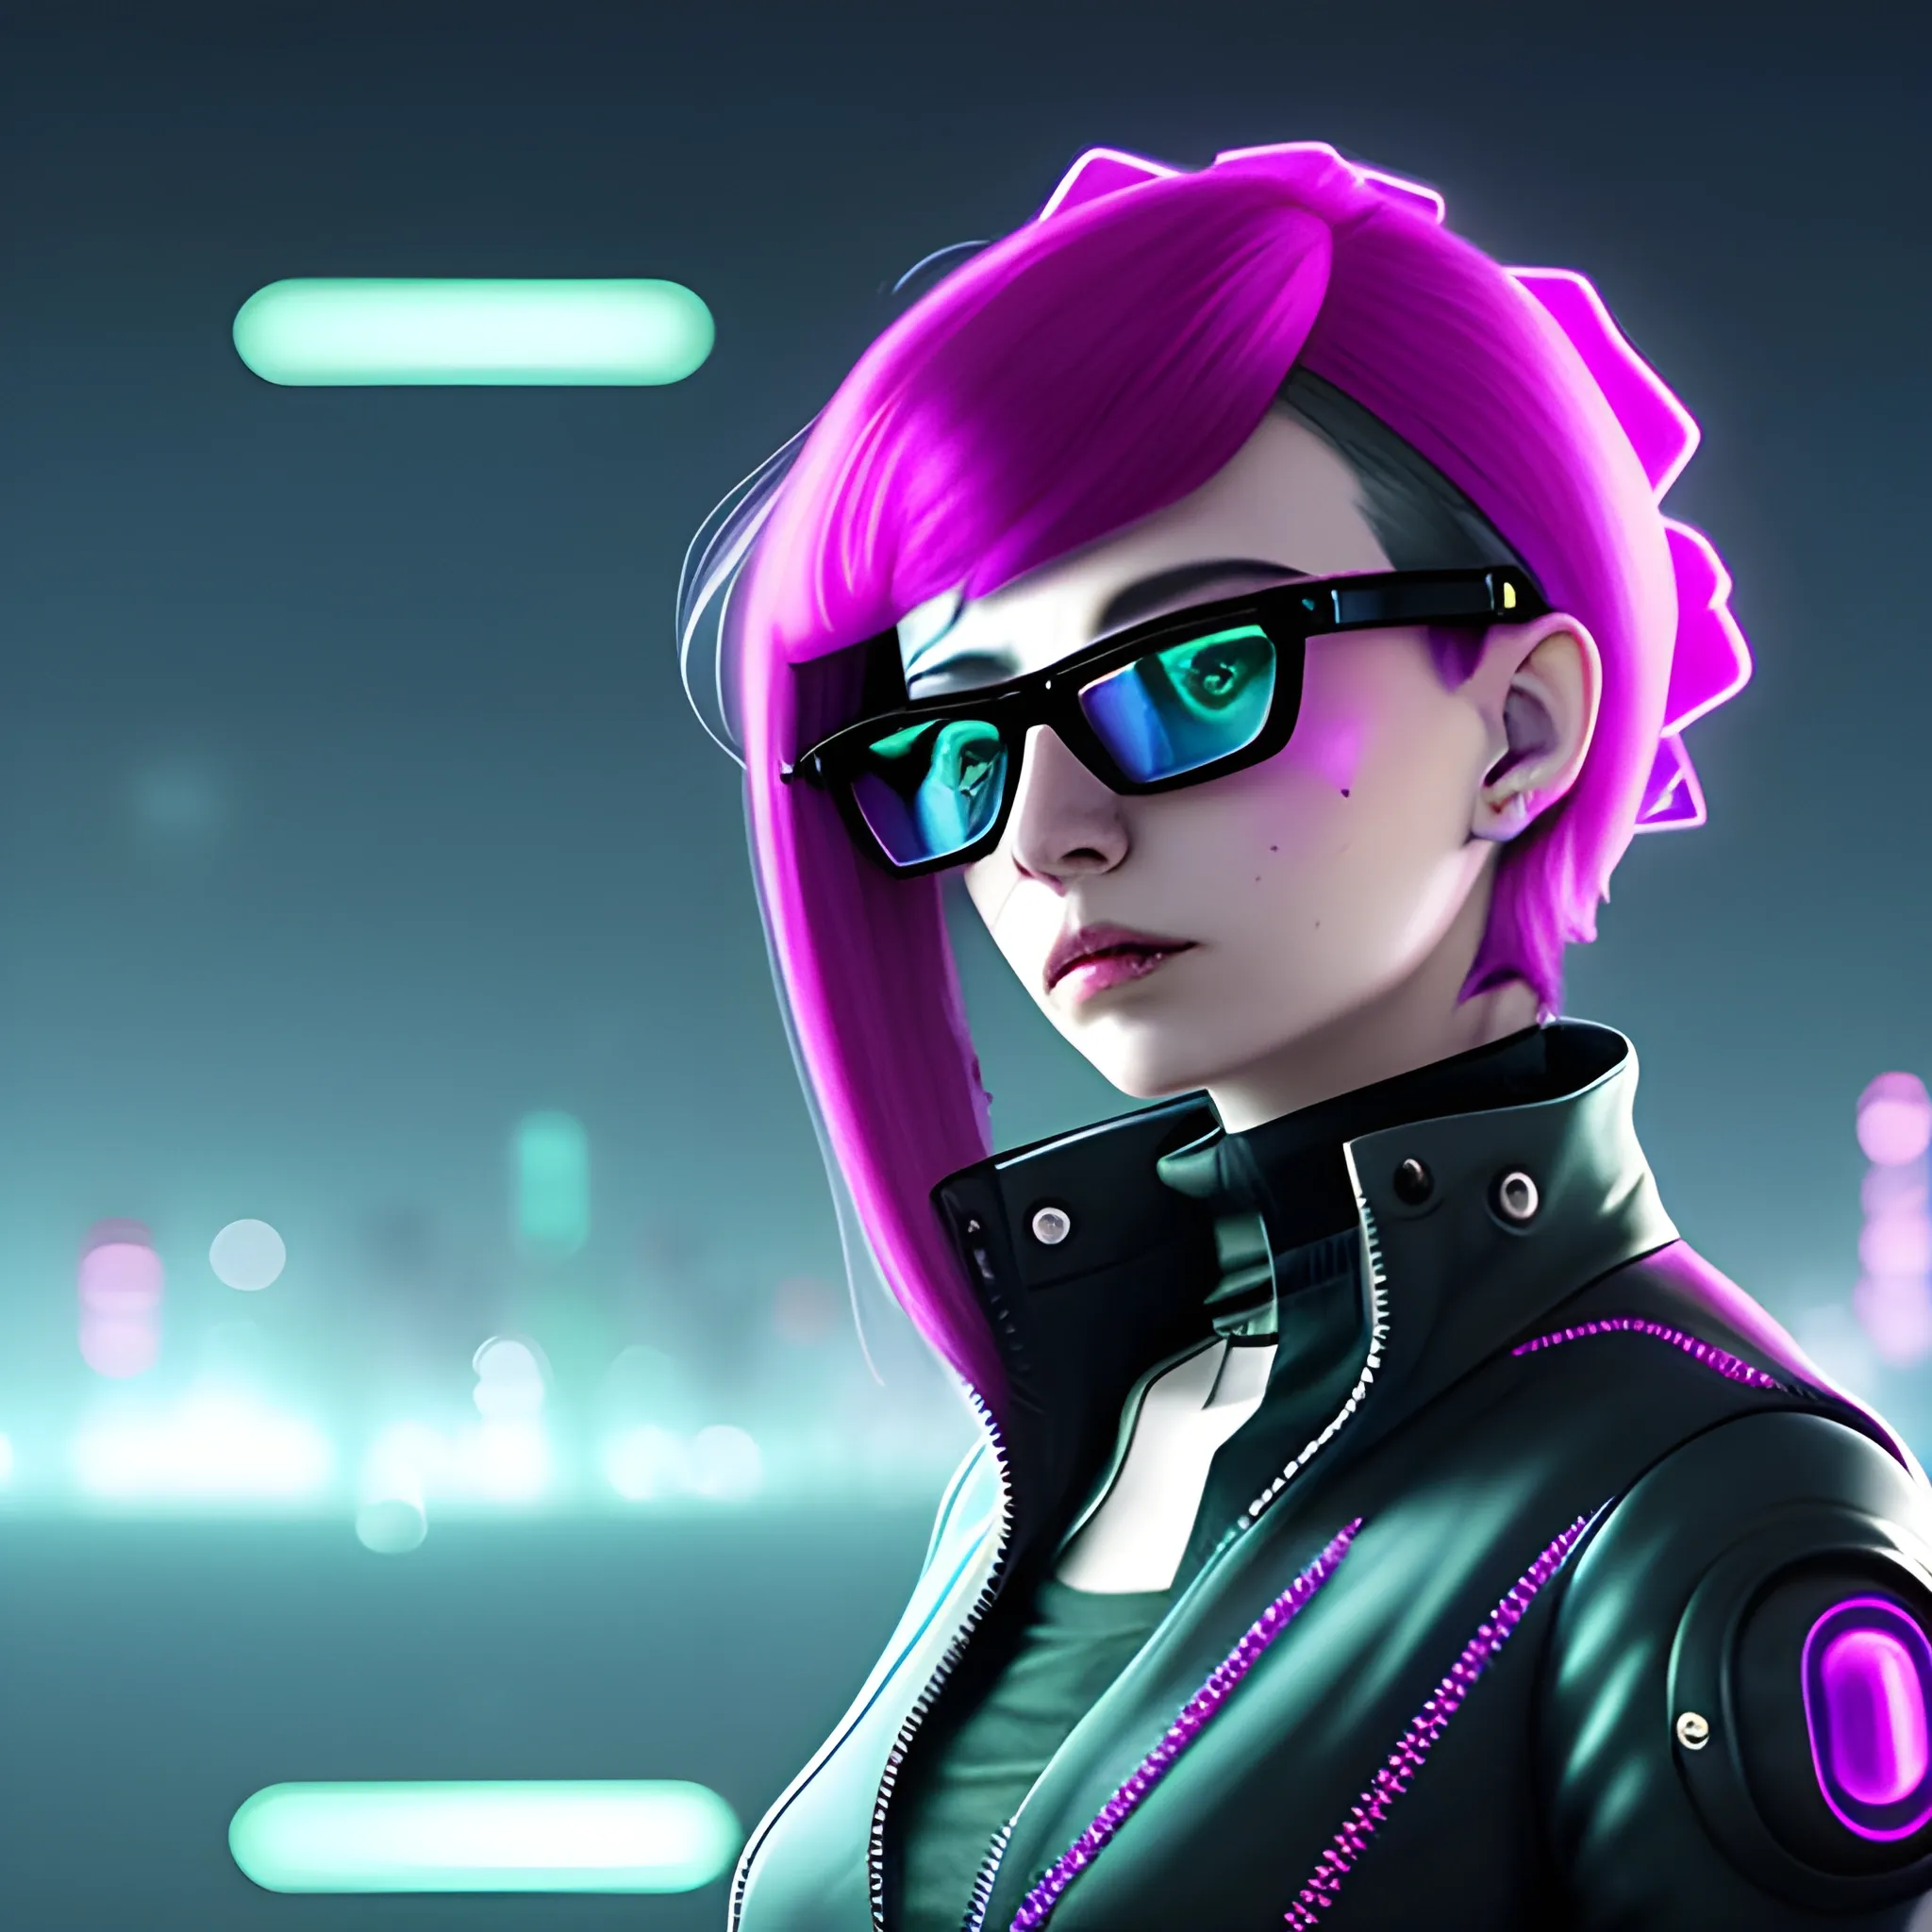 Crea una mujer bella, con lentes y cabello largo, está en un mundo futurista al estilo cyberpunk